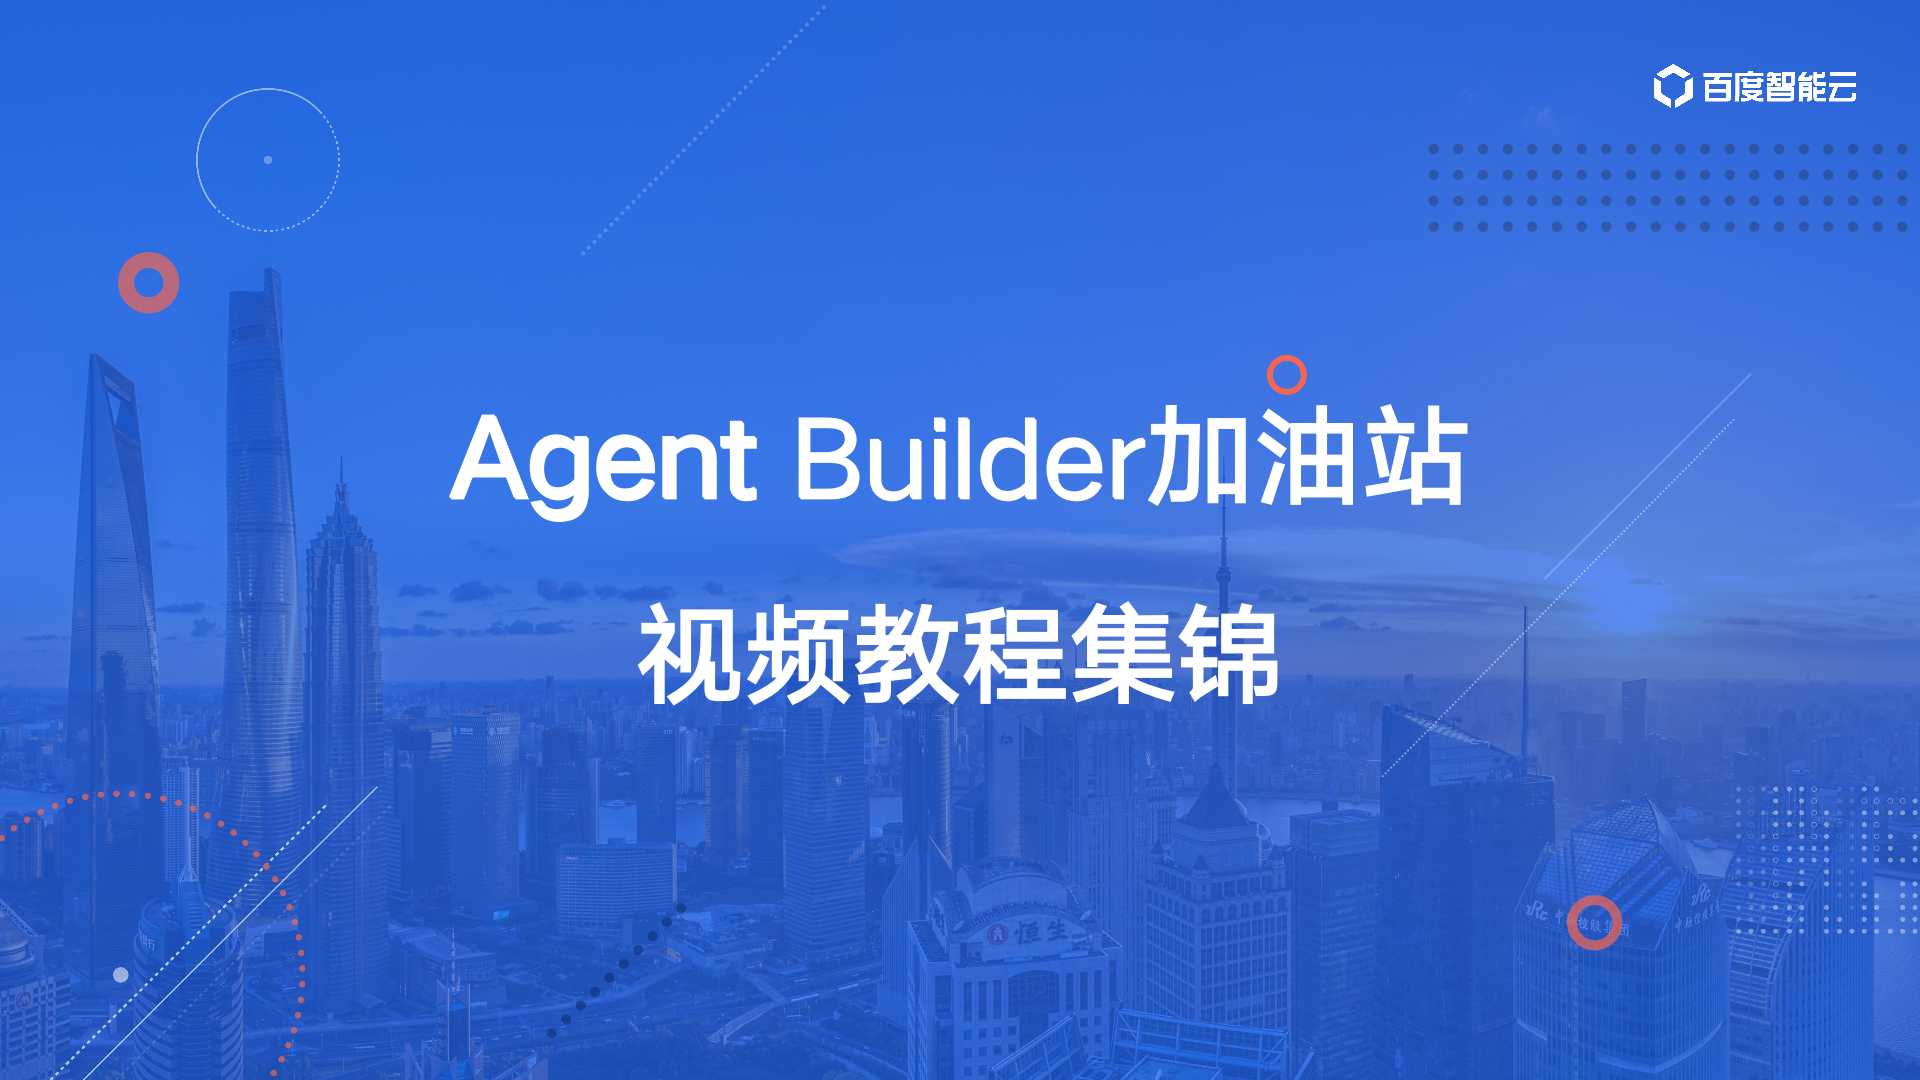 Agent Builder加油站 | AppBuilder教学视频教程集锦